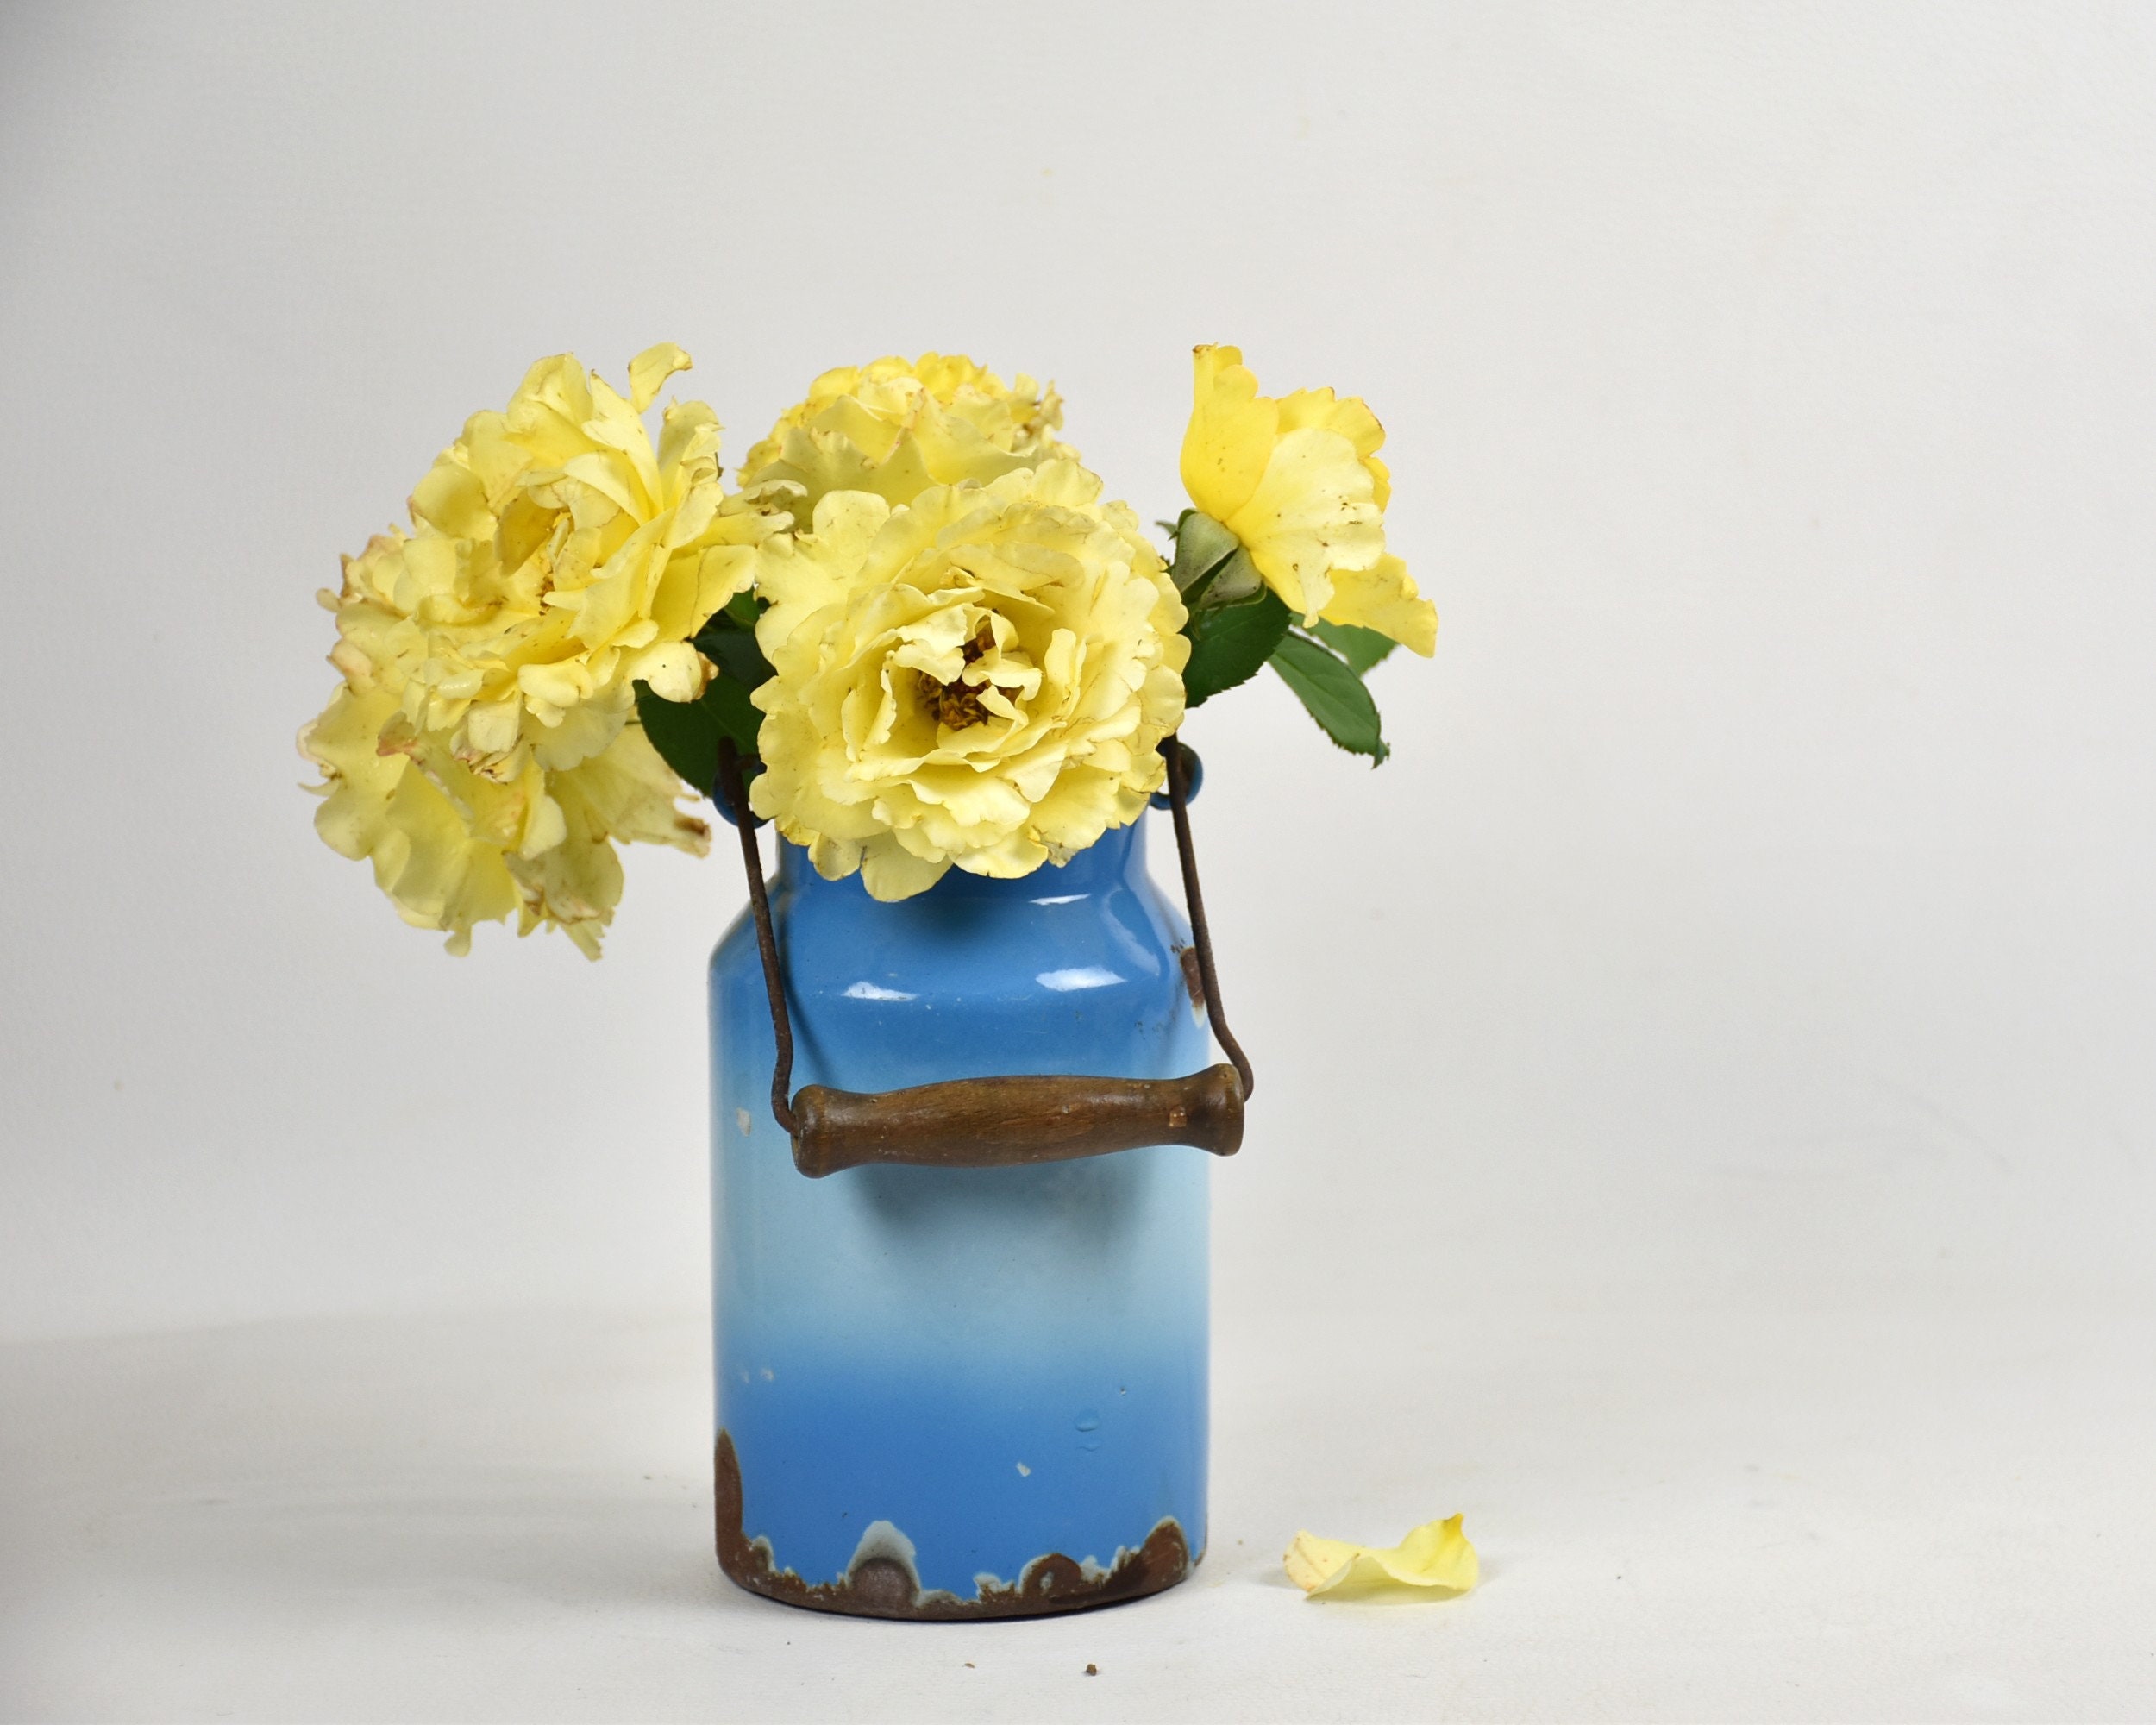 Ancienne Petite Laitière ou Pot à Lait Émaillé Bleu, Vase Pour La Décoration